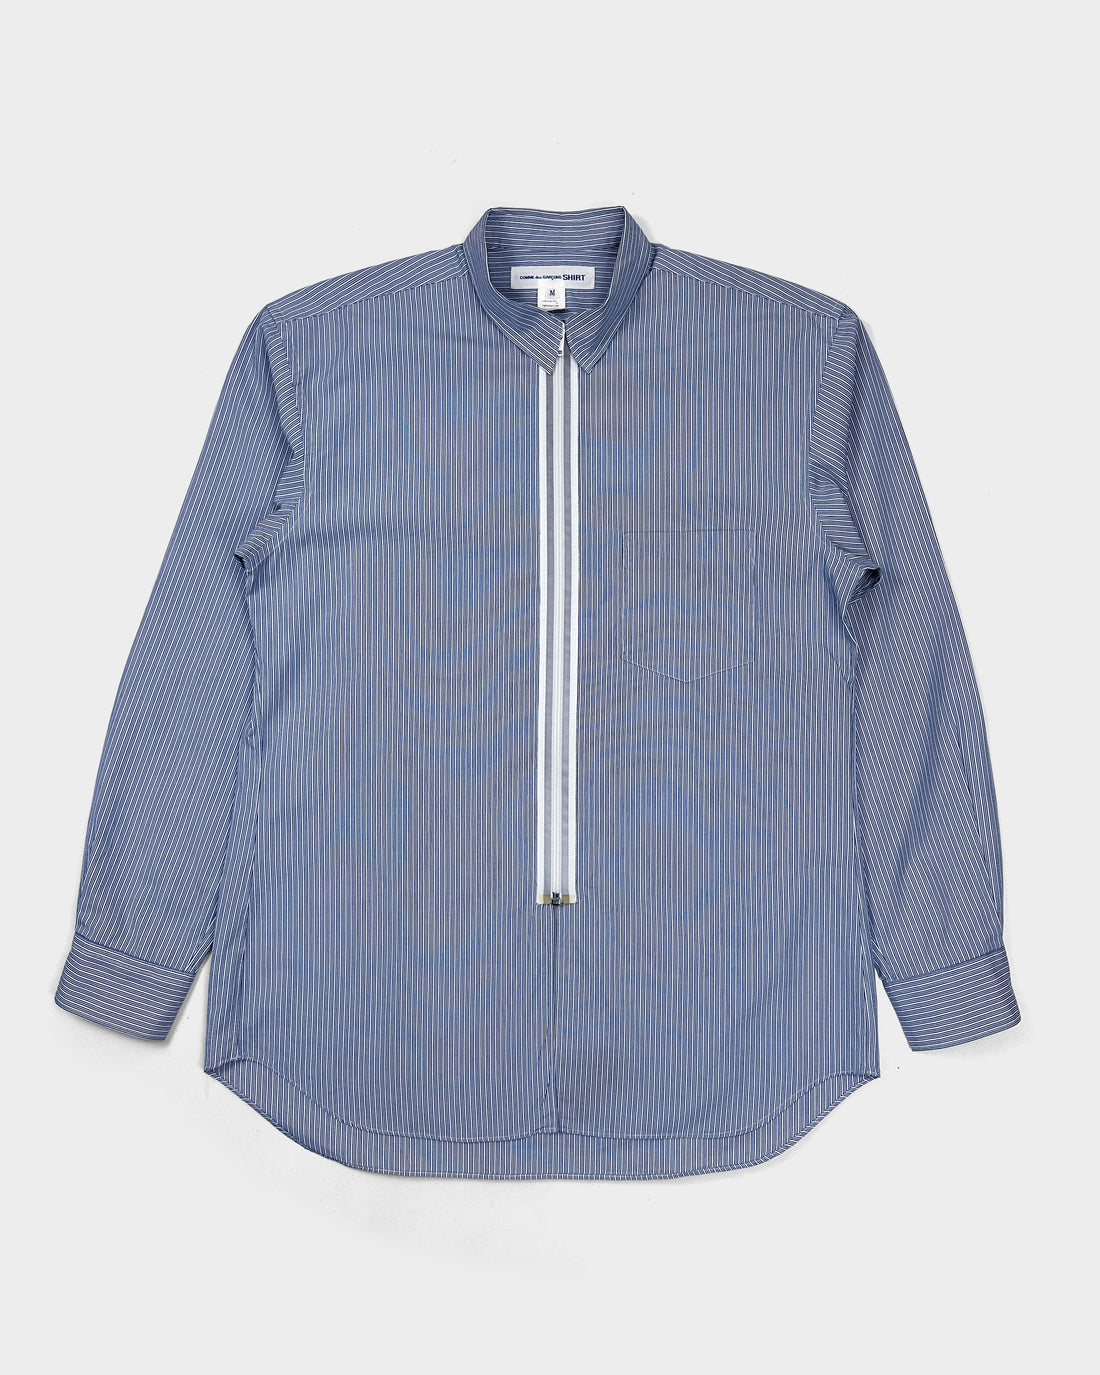 Comme des Garçons Shirt Zipped Blue Striped Shirt 2000's